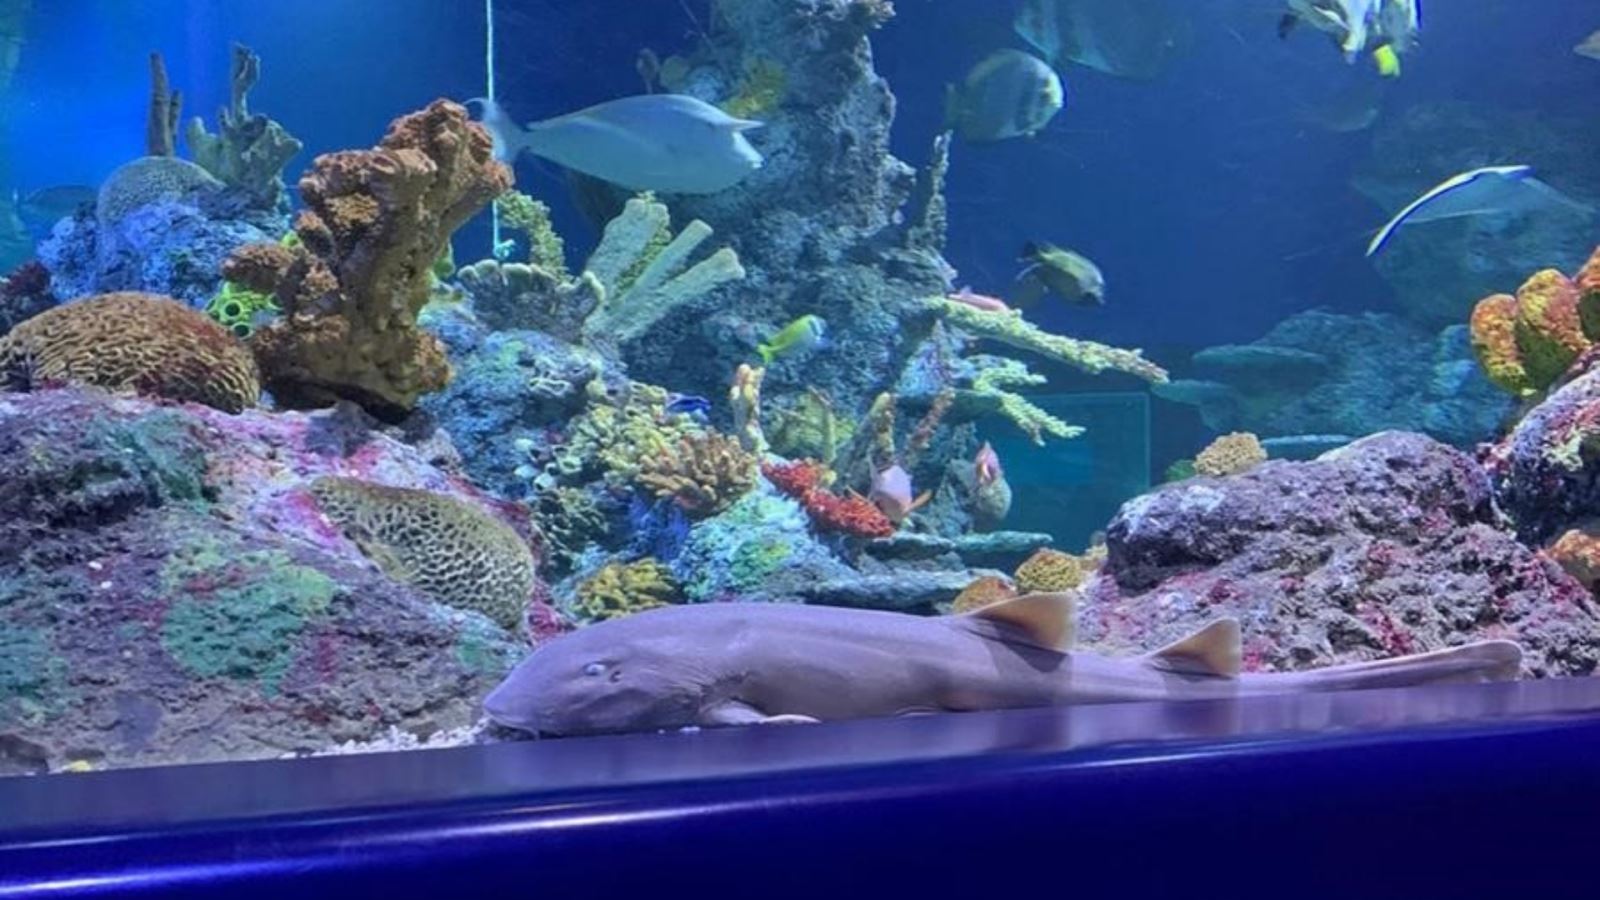 Arabian Carpetshark in Coral Reef display at Bristol Aquarium